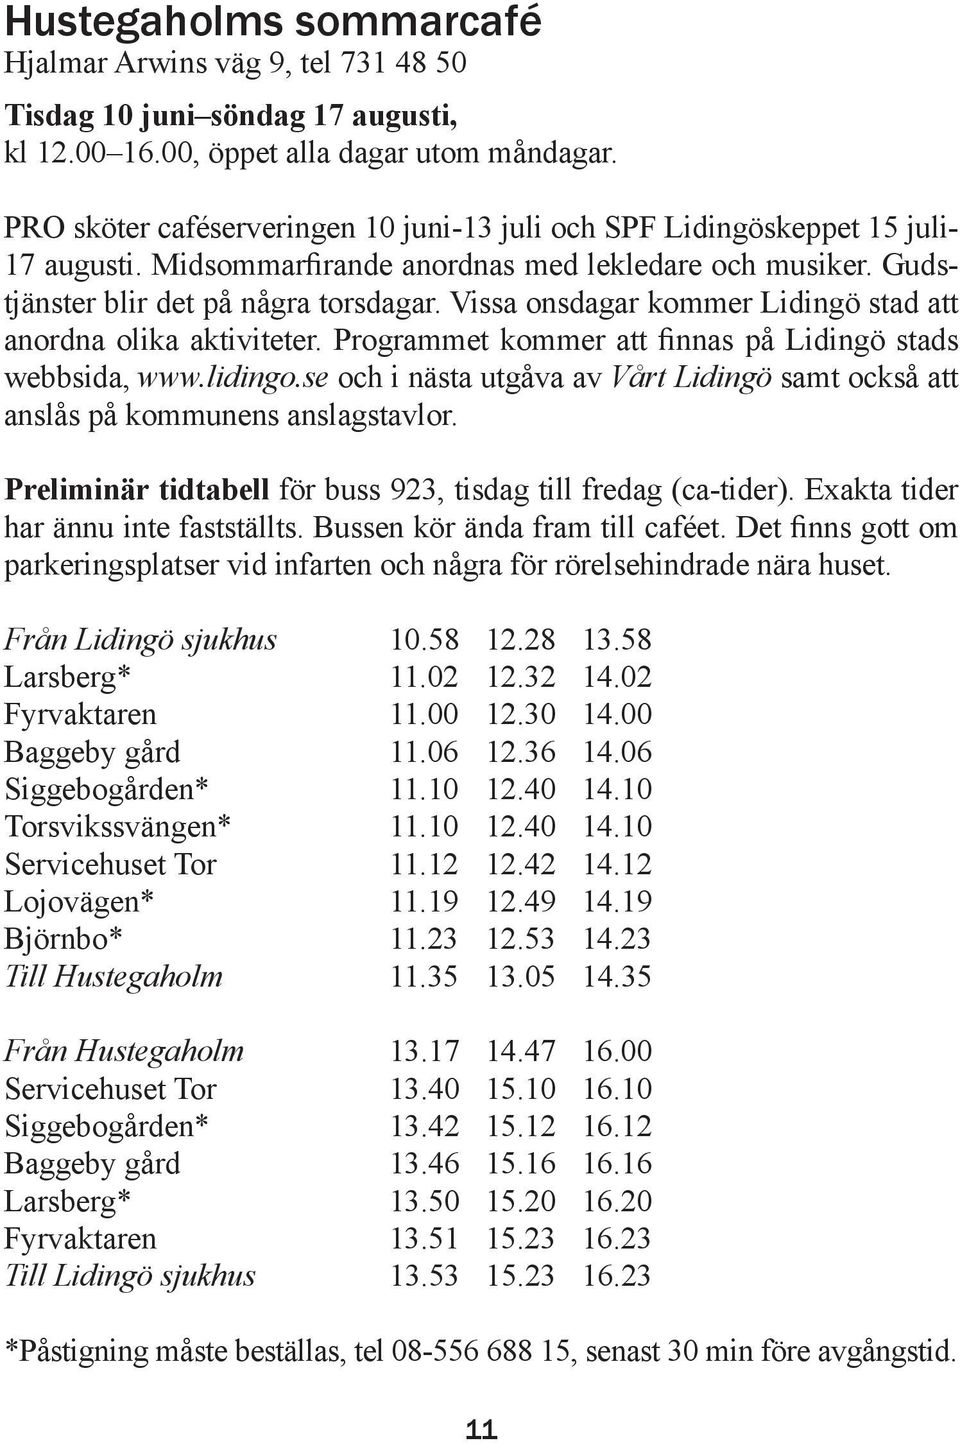 Vissa onsdagar kommer Lidingö stad att anordna olika aktiviteter. Programmet kommer att finnas på Lidingö stads webbsida, www.lidingo.